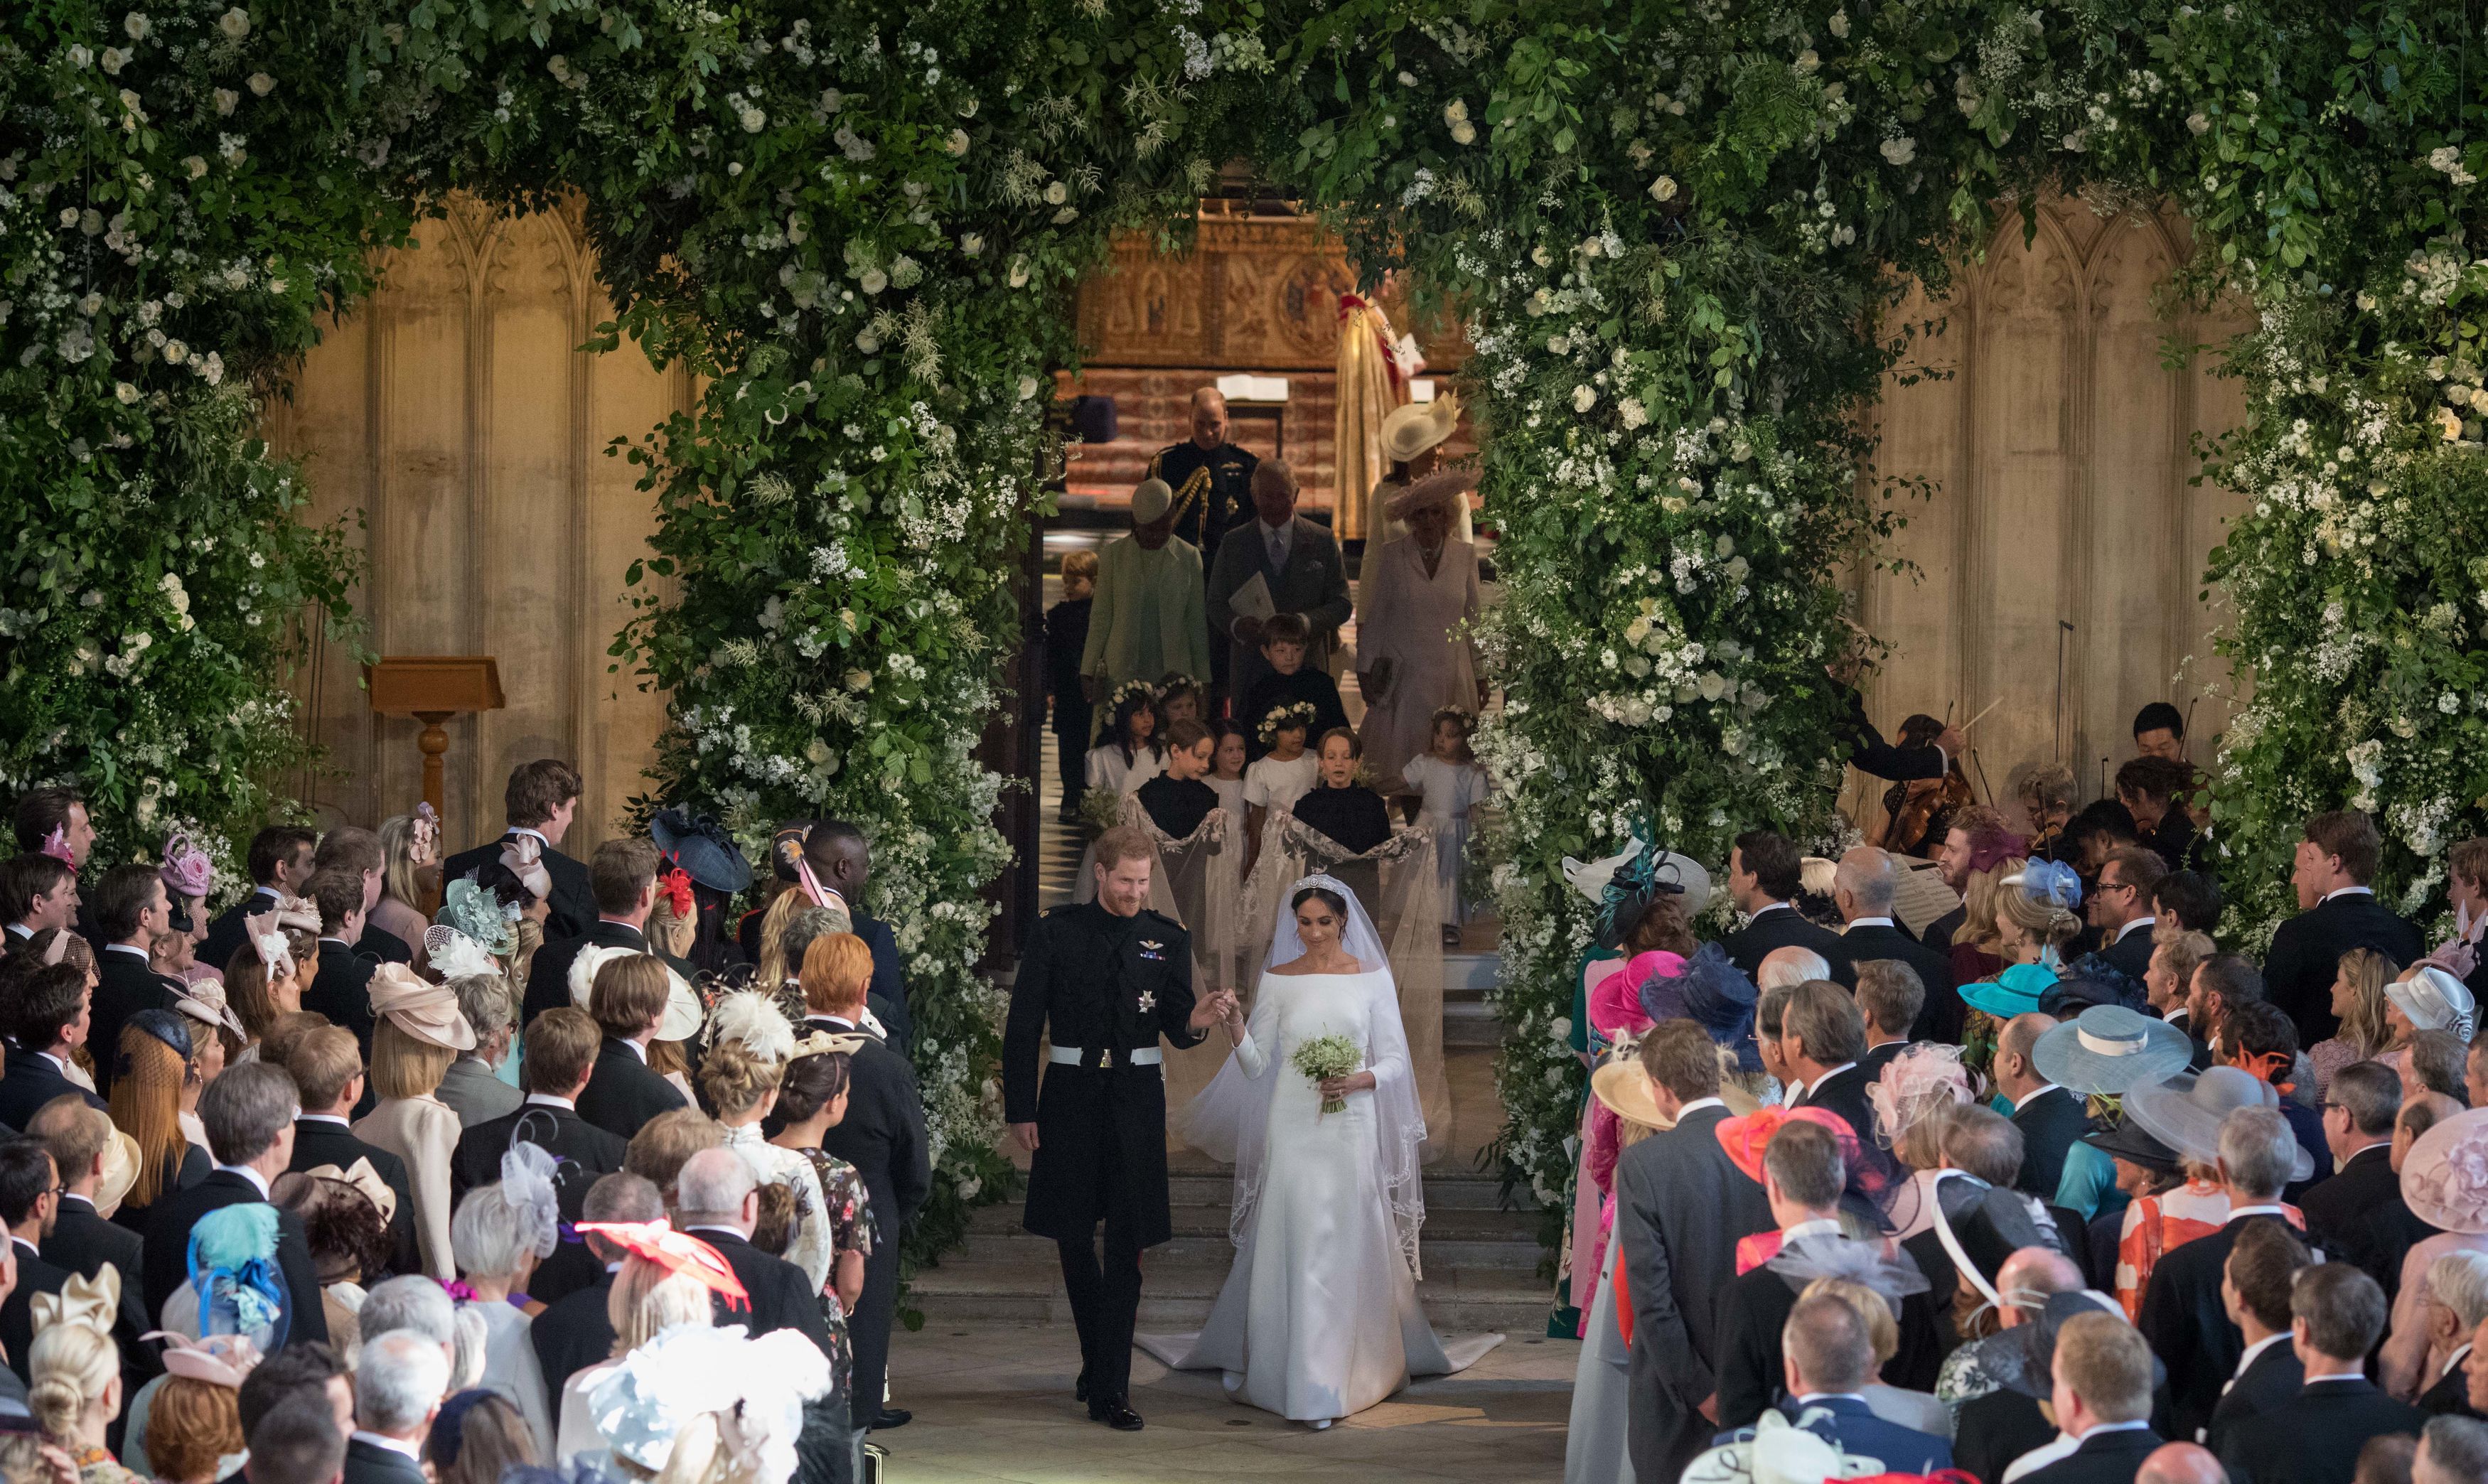 El príncipe Harry y Meghan Markle saliendo de la capilla de San Jorge el 19 de mayo de 2018 en Windsor, Inglaterra. | Foto: Getty Images